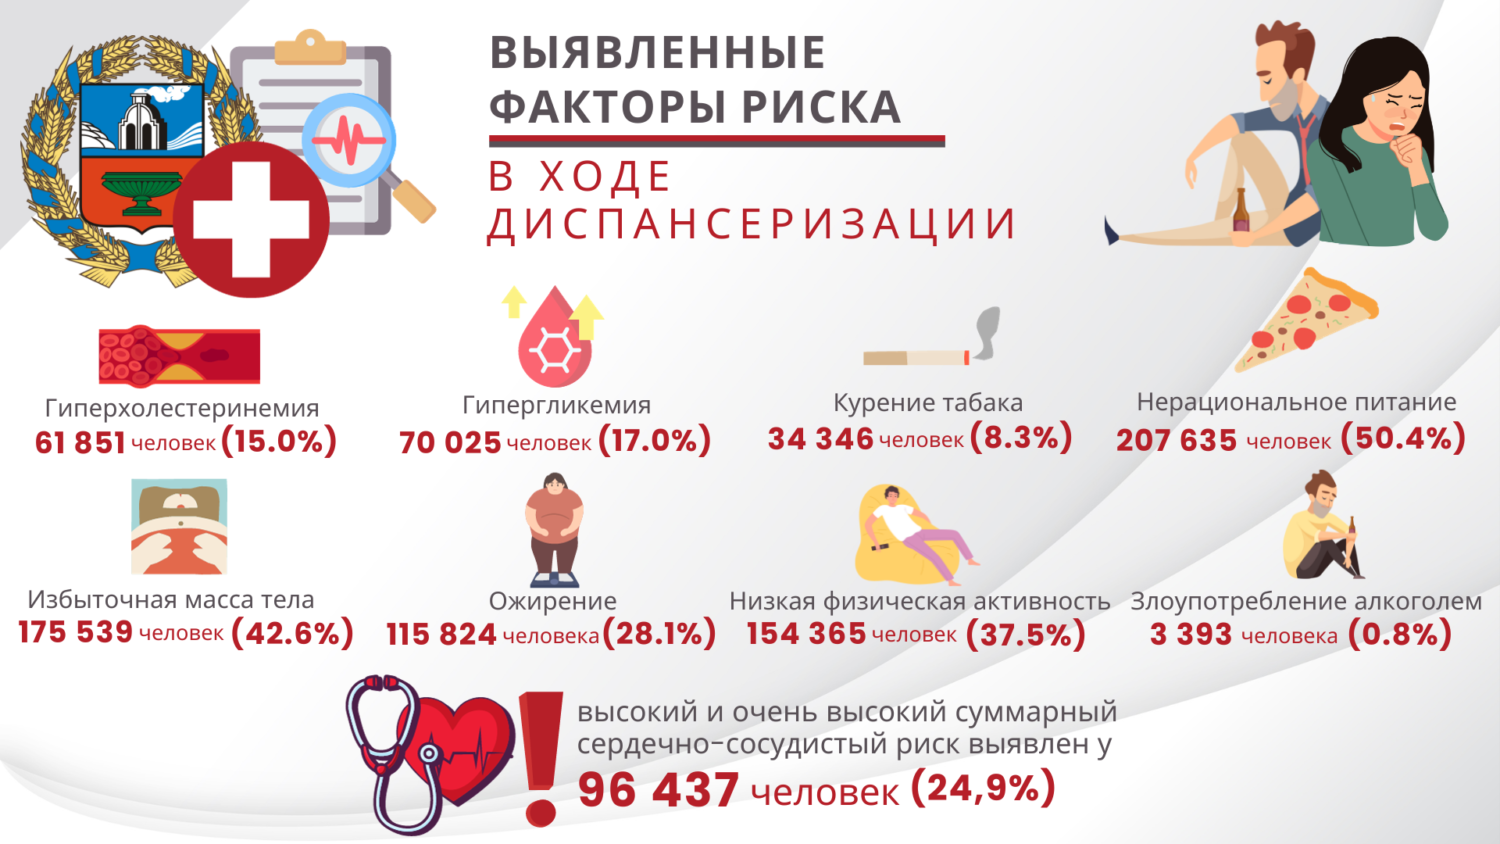 Какие болезни выявляют у жителей Алтайского края при диспансеризации? Инфографика